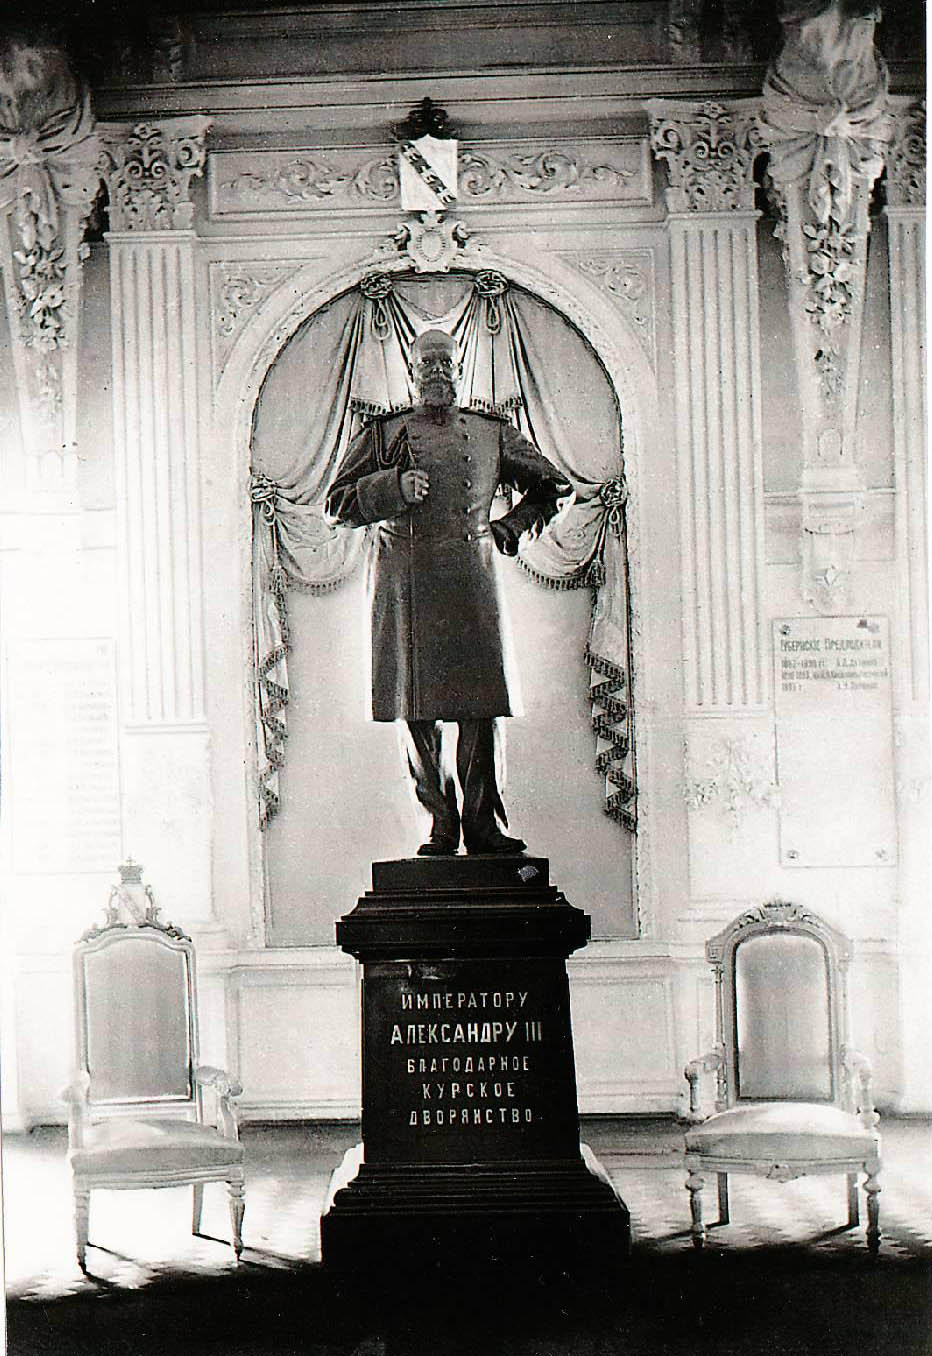 Памятник Александру III в Городском Собрании (211K)